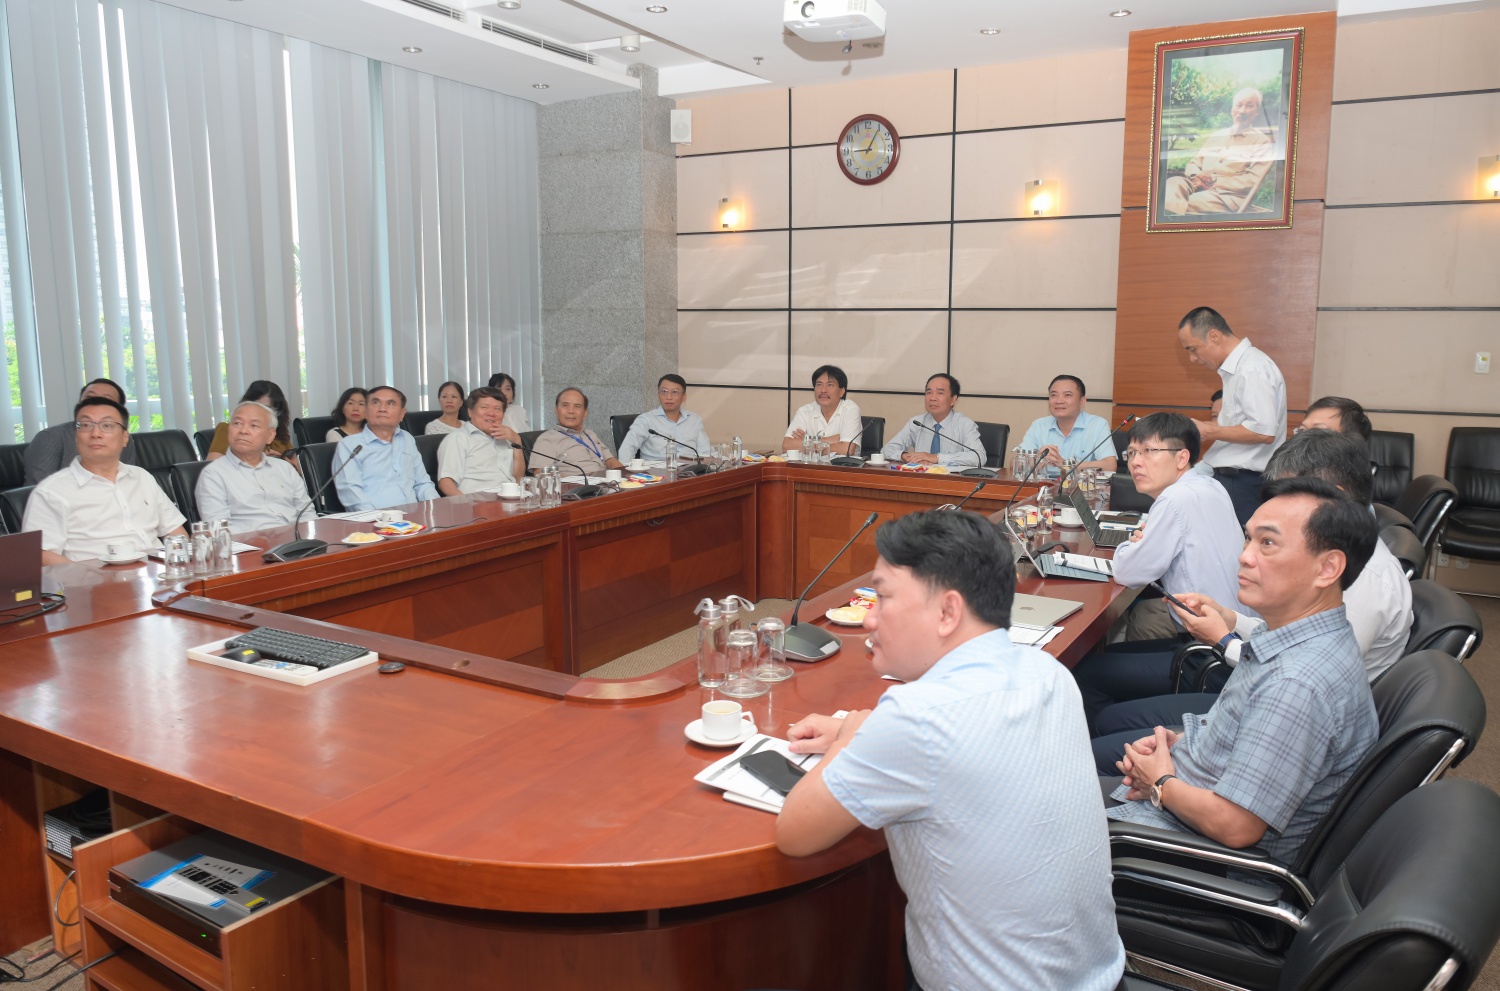 Hội Dầu khí Việt Nam tổ chức Hội nghị giao ban với các đơn vị và hội viên tổ chức”